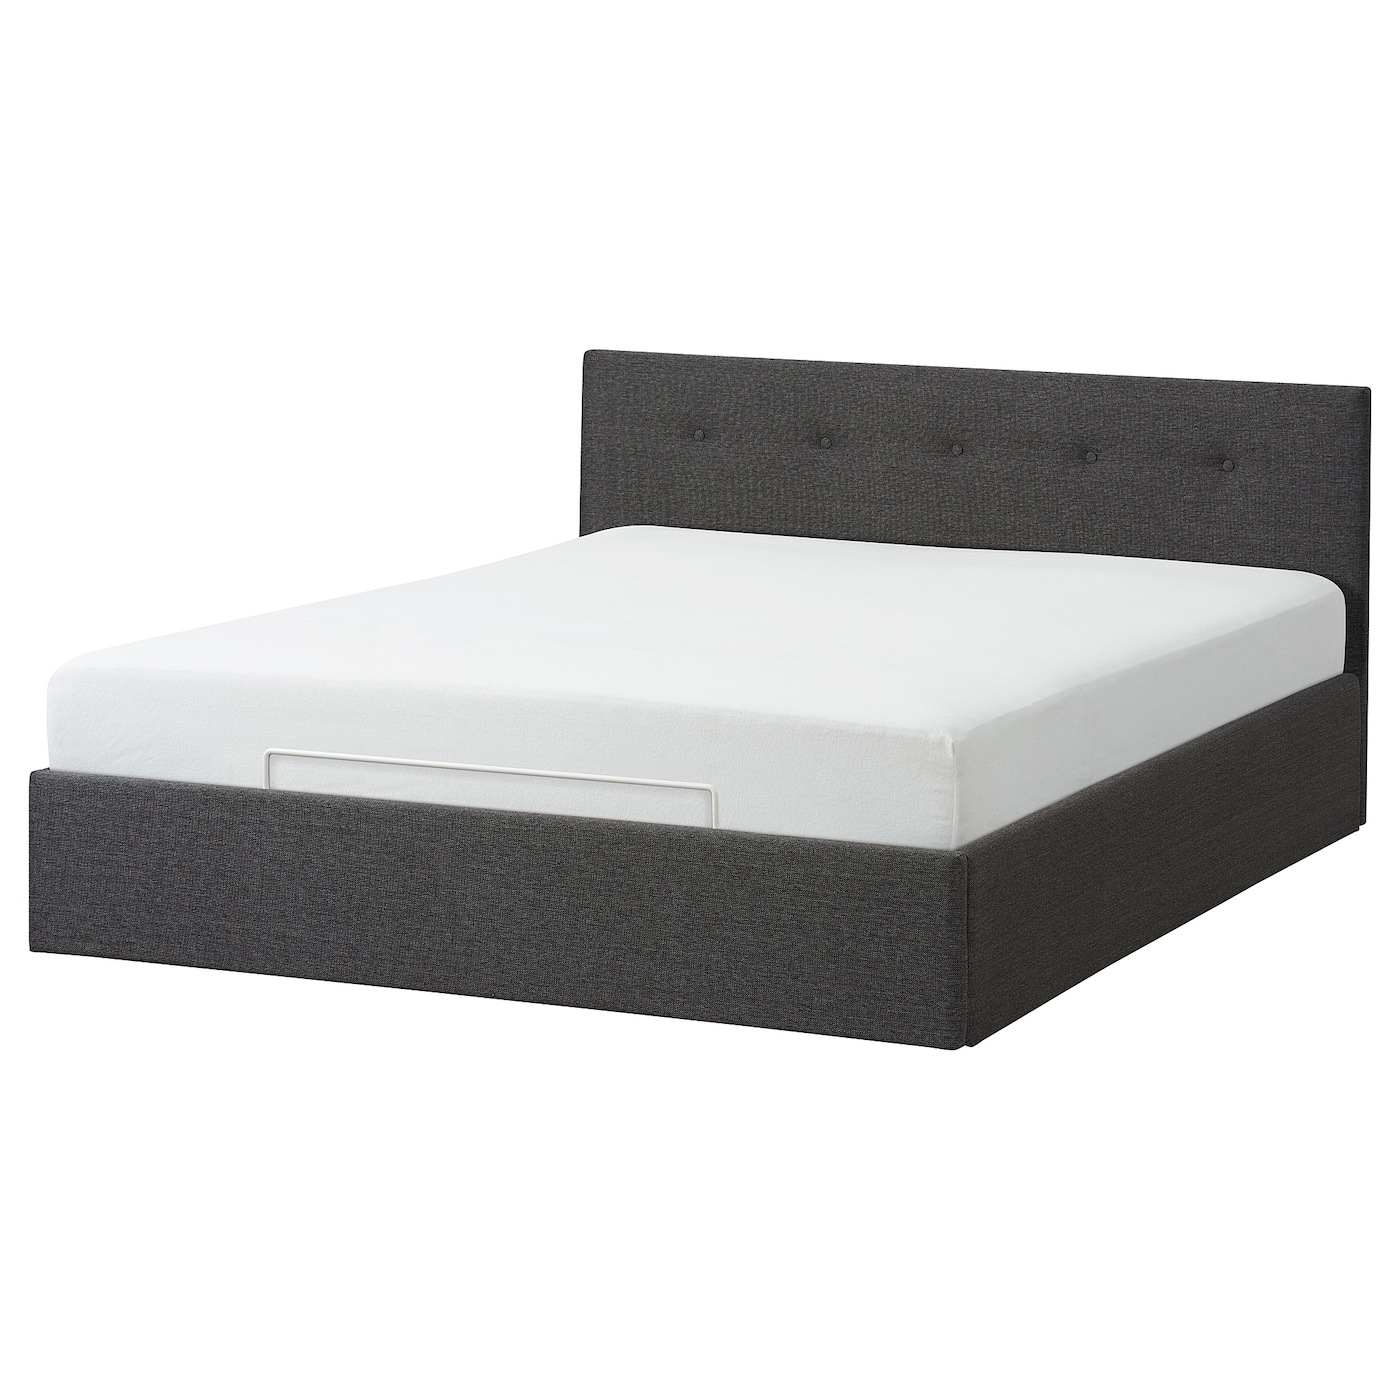 Кровать с ящиком - IKEA BJORBEKK, 200х140 см, серый, БЙОРБЕКК ИКЕА